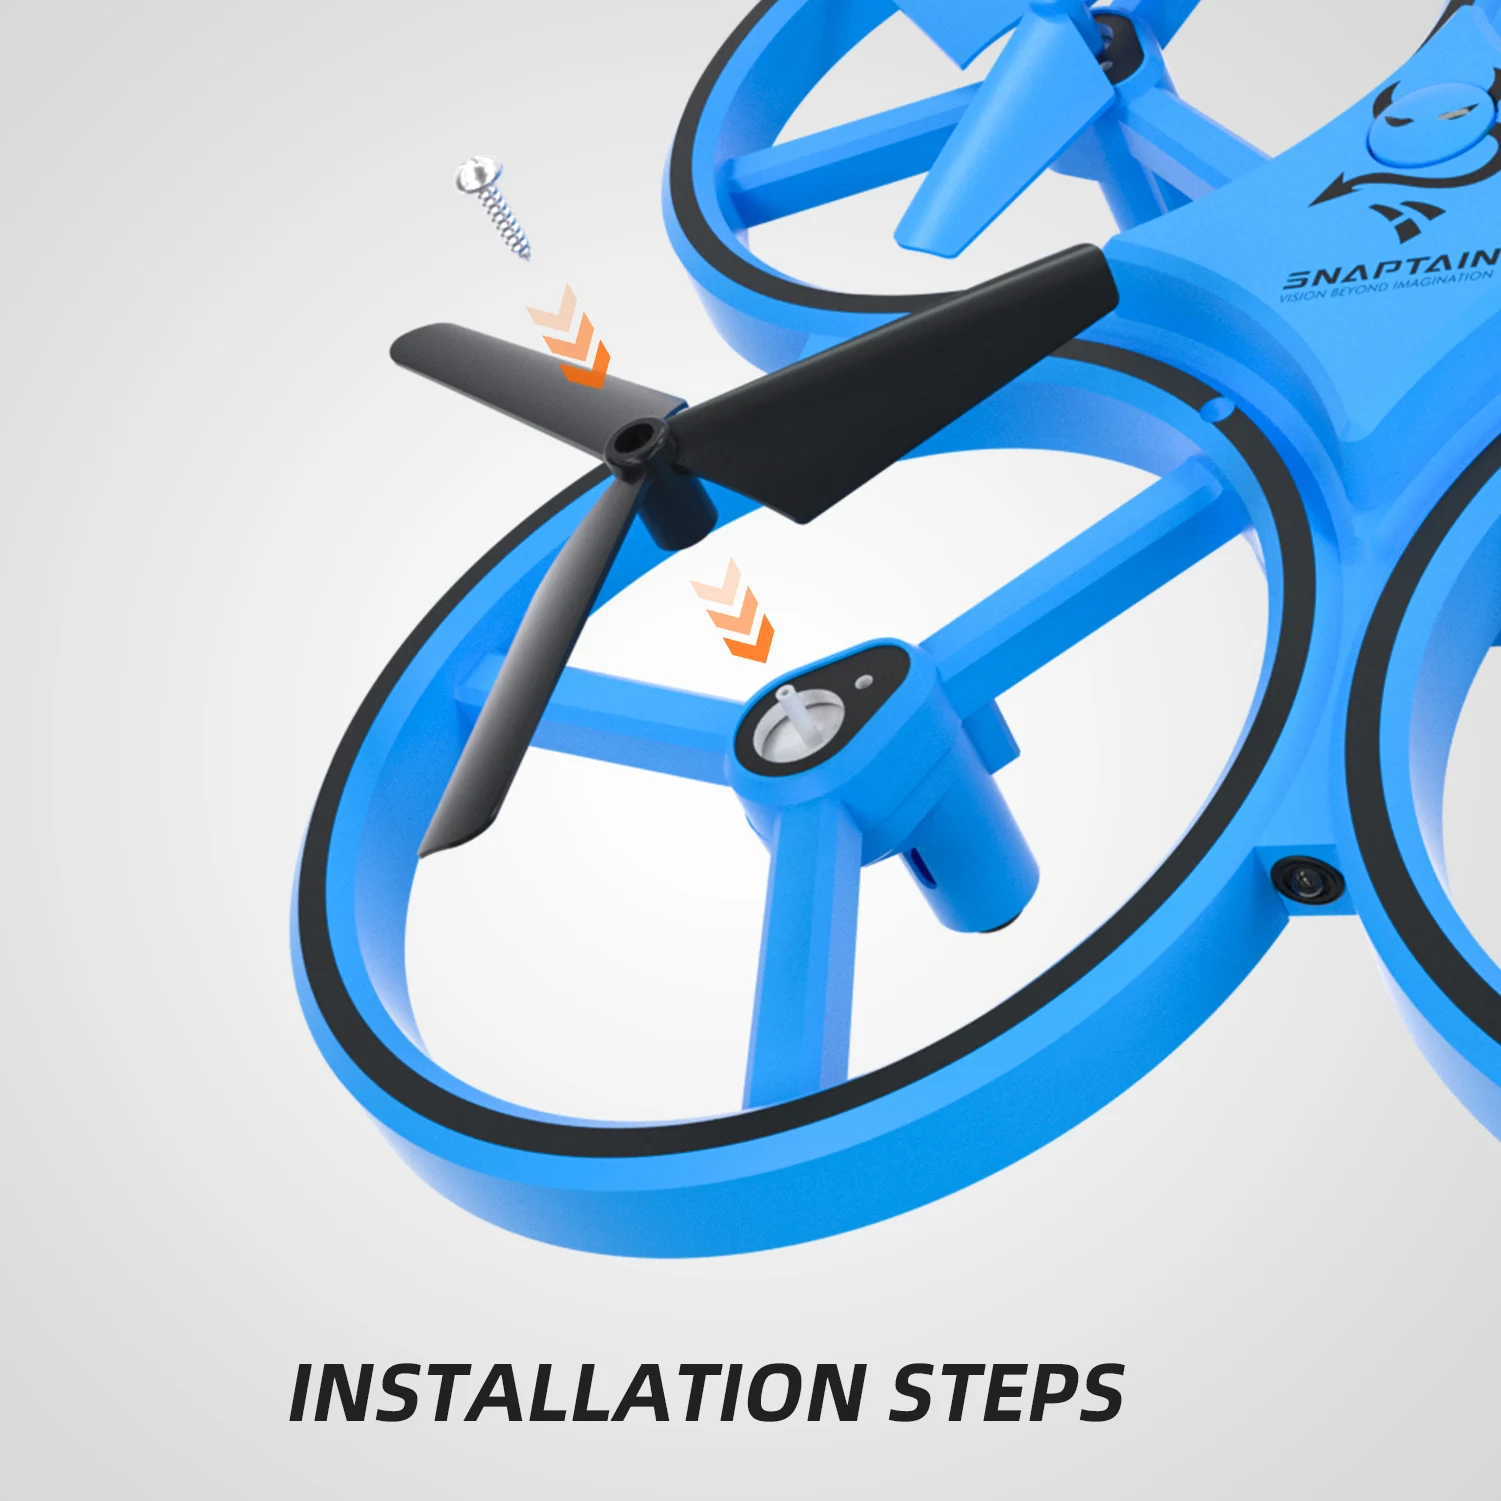 SNAPTAIN SP300 RC Drone, piezas de repuesto, Kits de accesorios, conjunto  de hélices| | - AliExpress